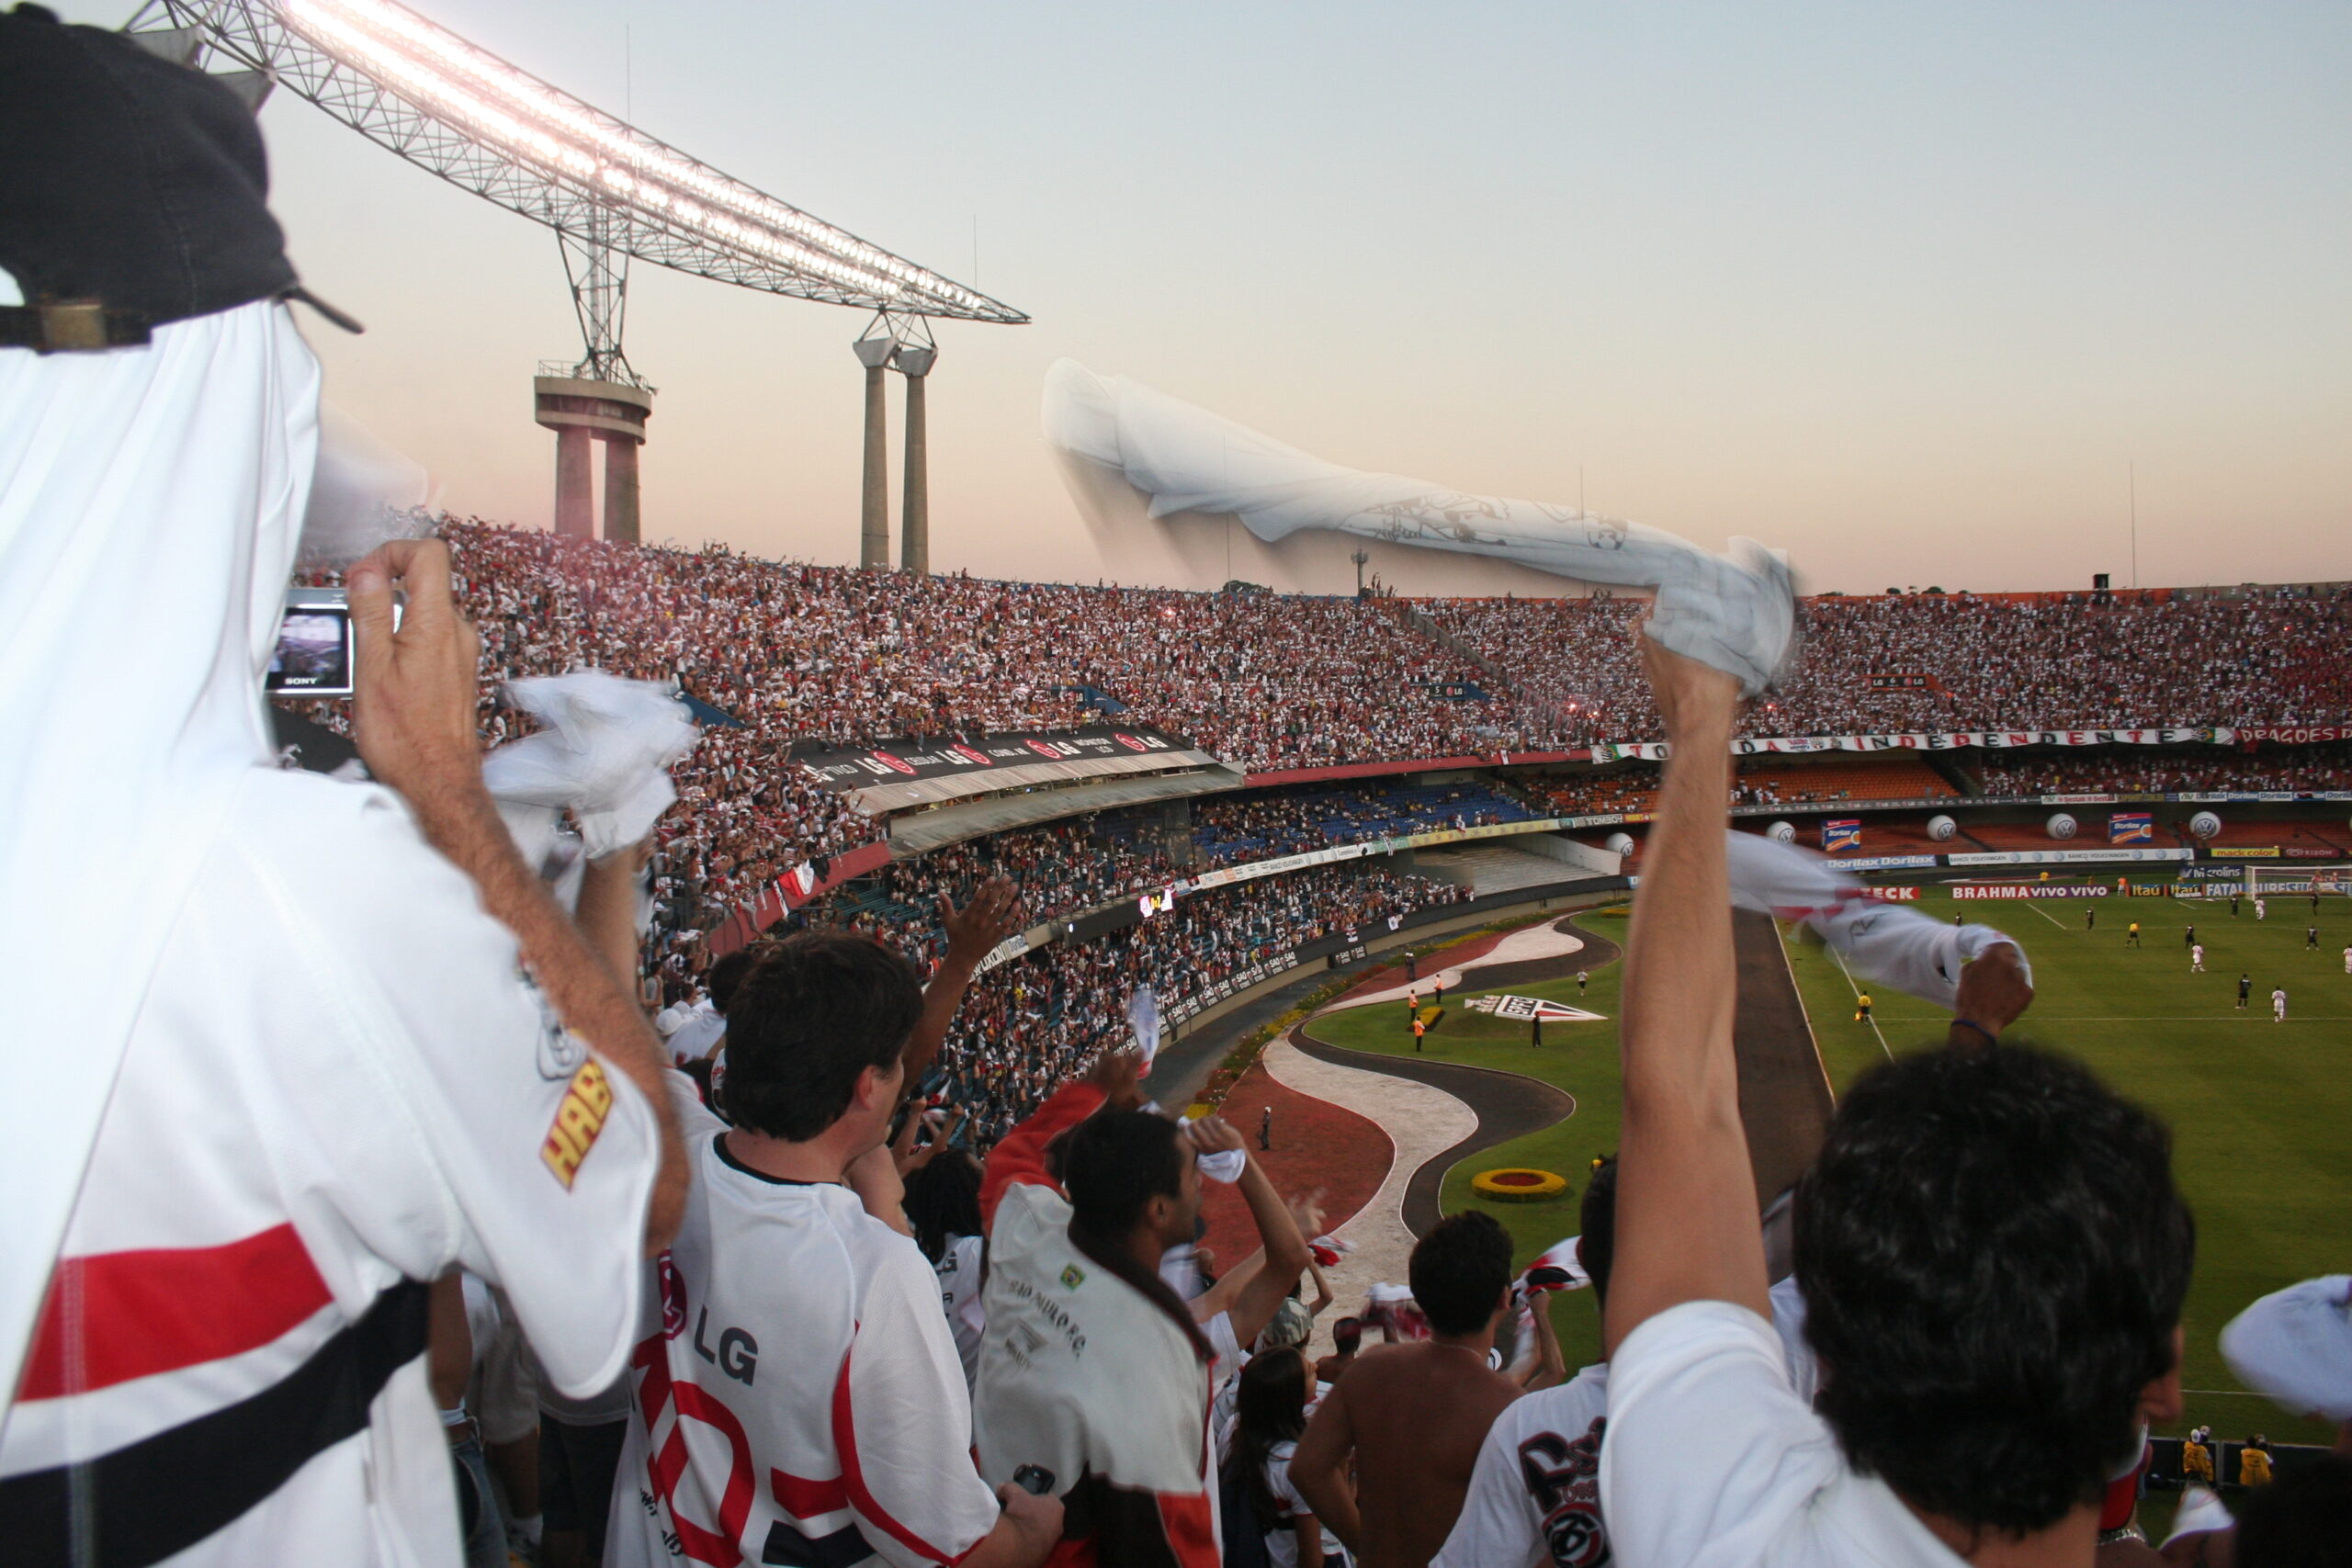 Torcedores do São Paulo FC torcendo apaixonadamente no estádio. (Wikimedia/Tales.ebner)